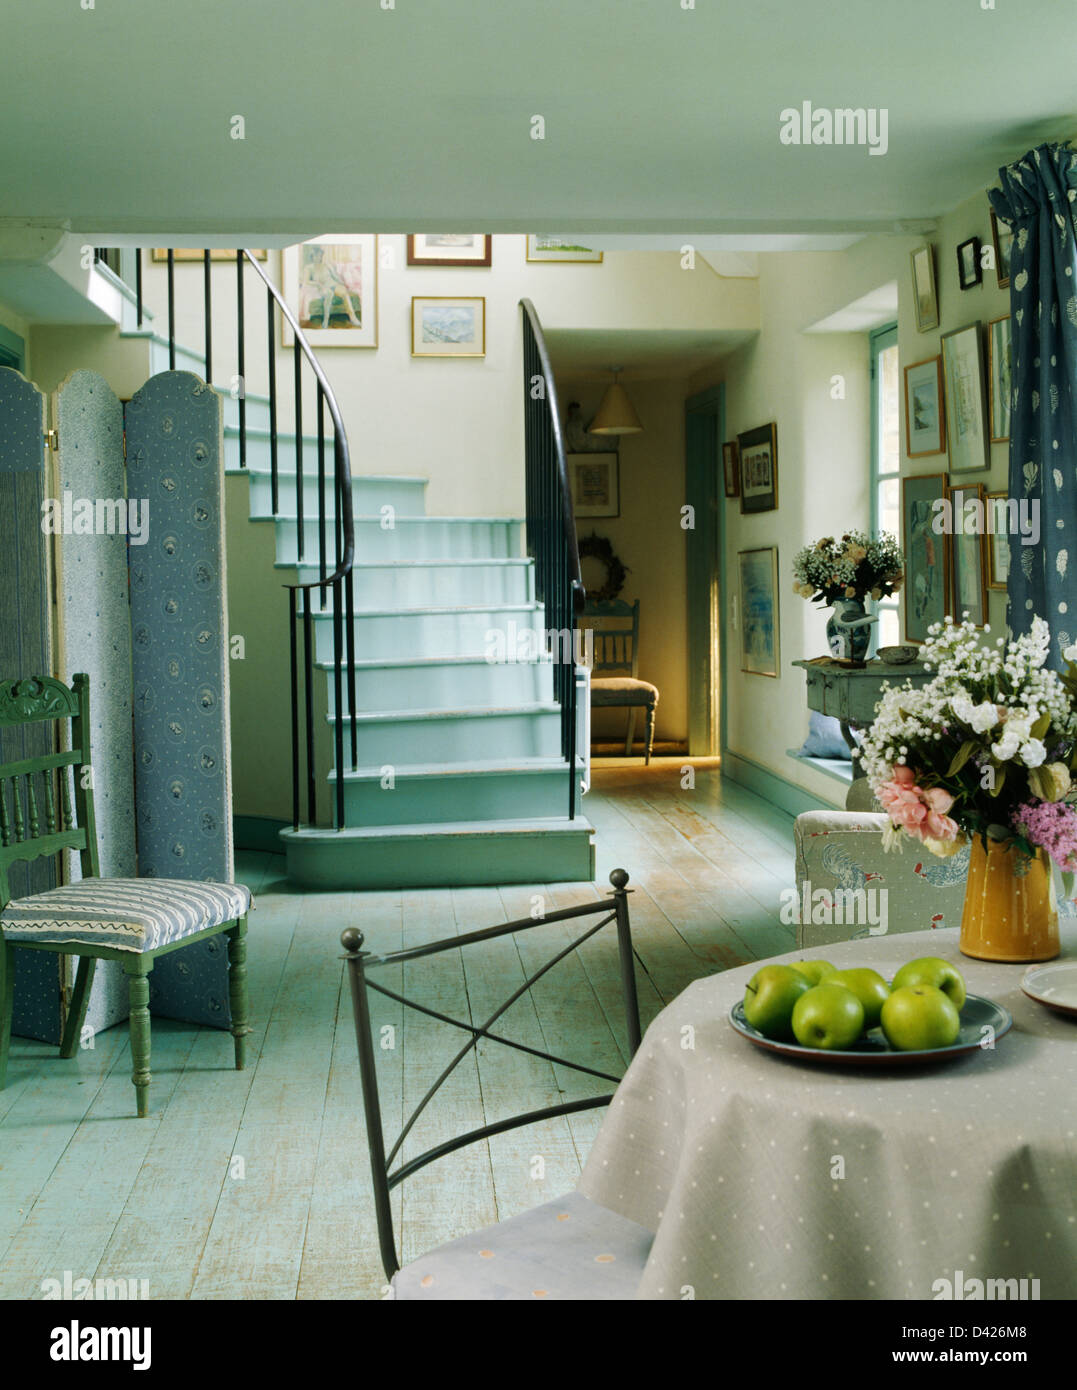 Escalier peint turquoise pâle et parquet en pays hall salle à manger avec table circulaire sur tissu beige Banque D'Images